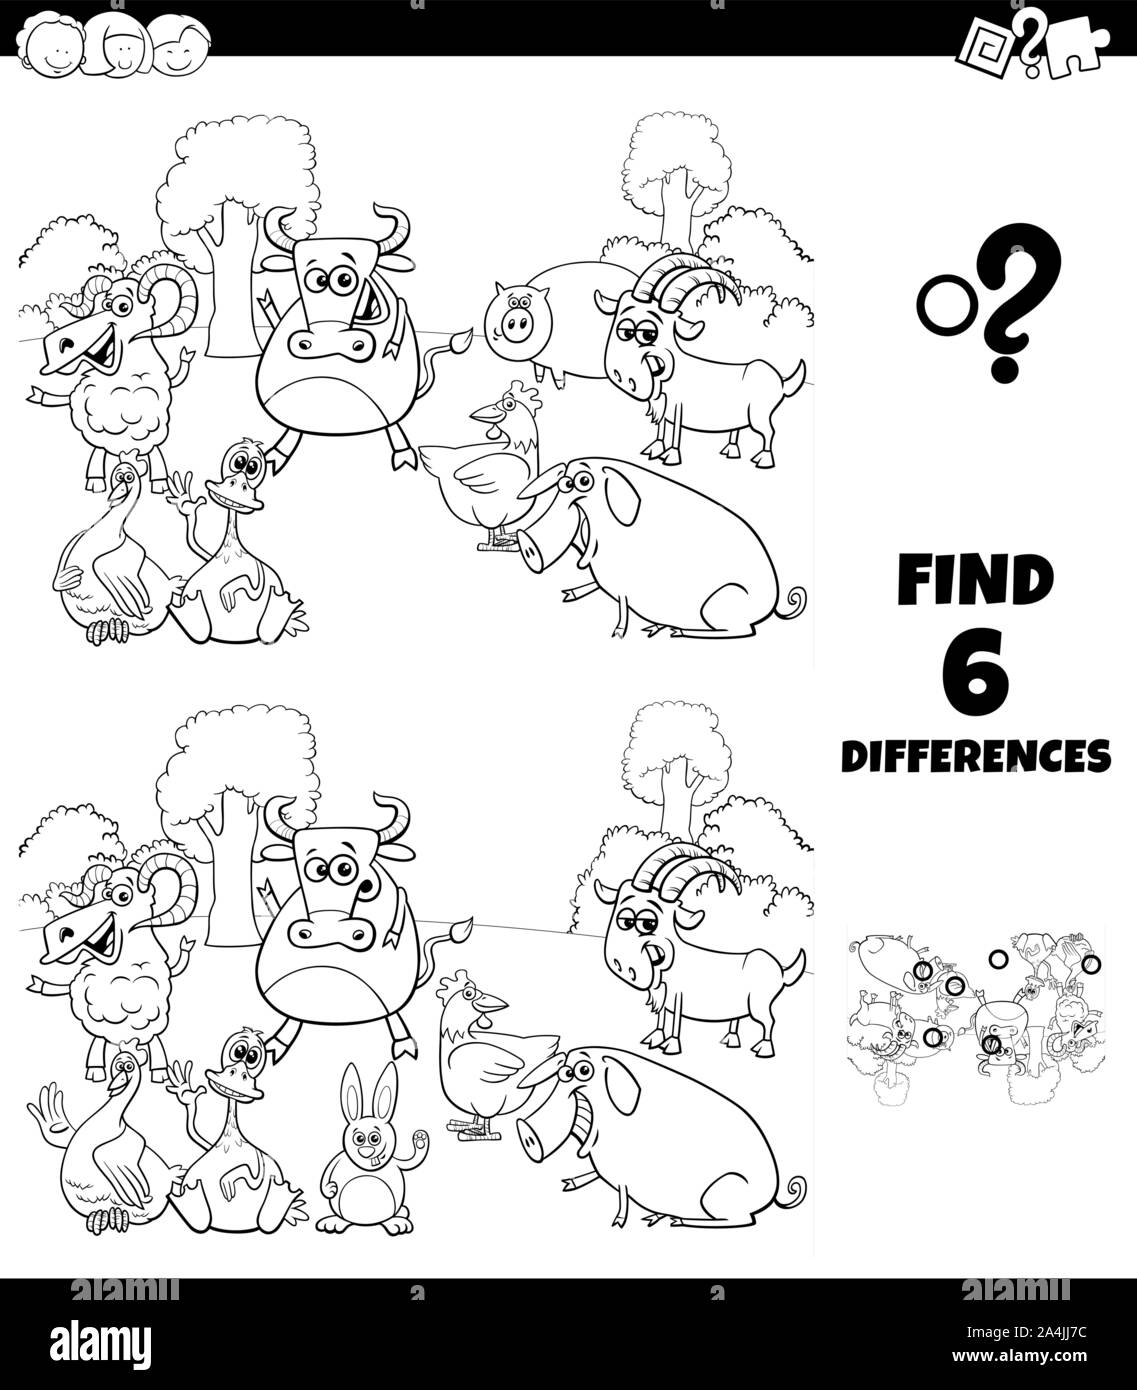 Illustration Cartoon noir et blanc de trouver les différences entre les images jeu éducatif pour les enfants ayant des caractères des animaux de ferme Coloring Book Illustration de Vecteur